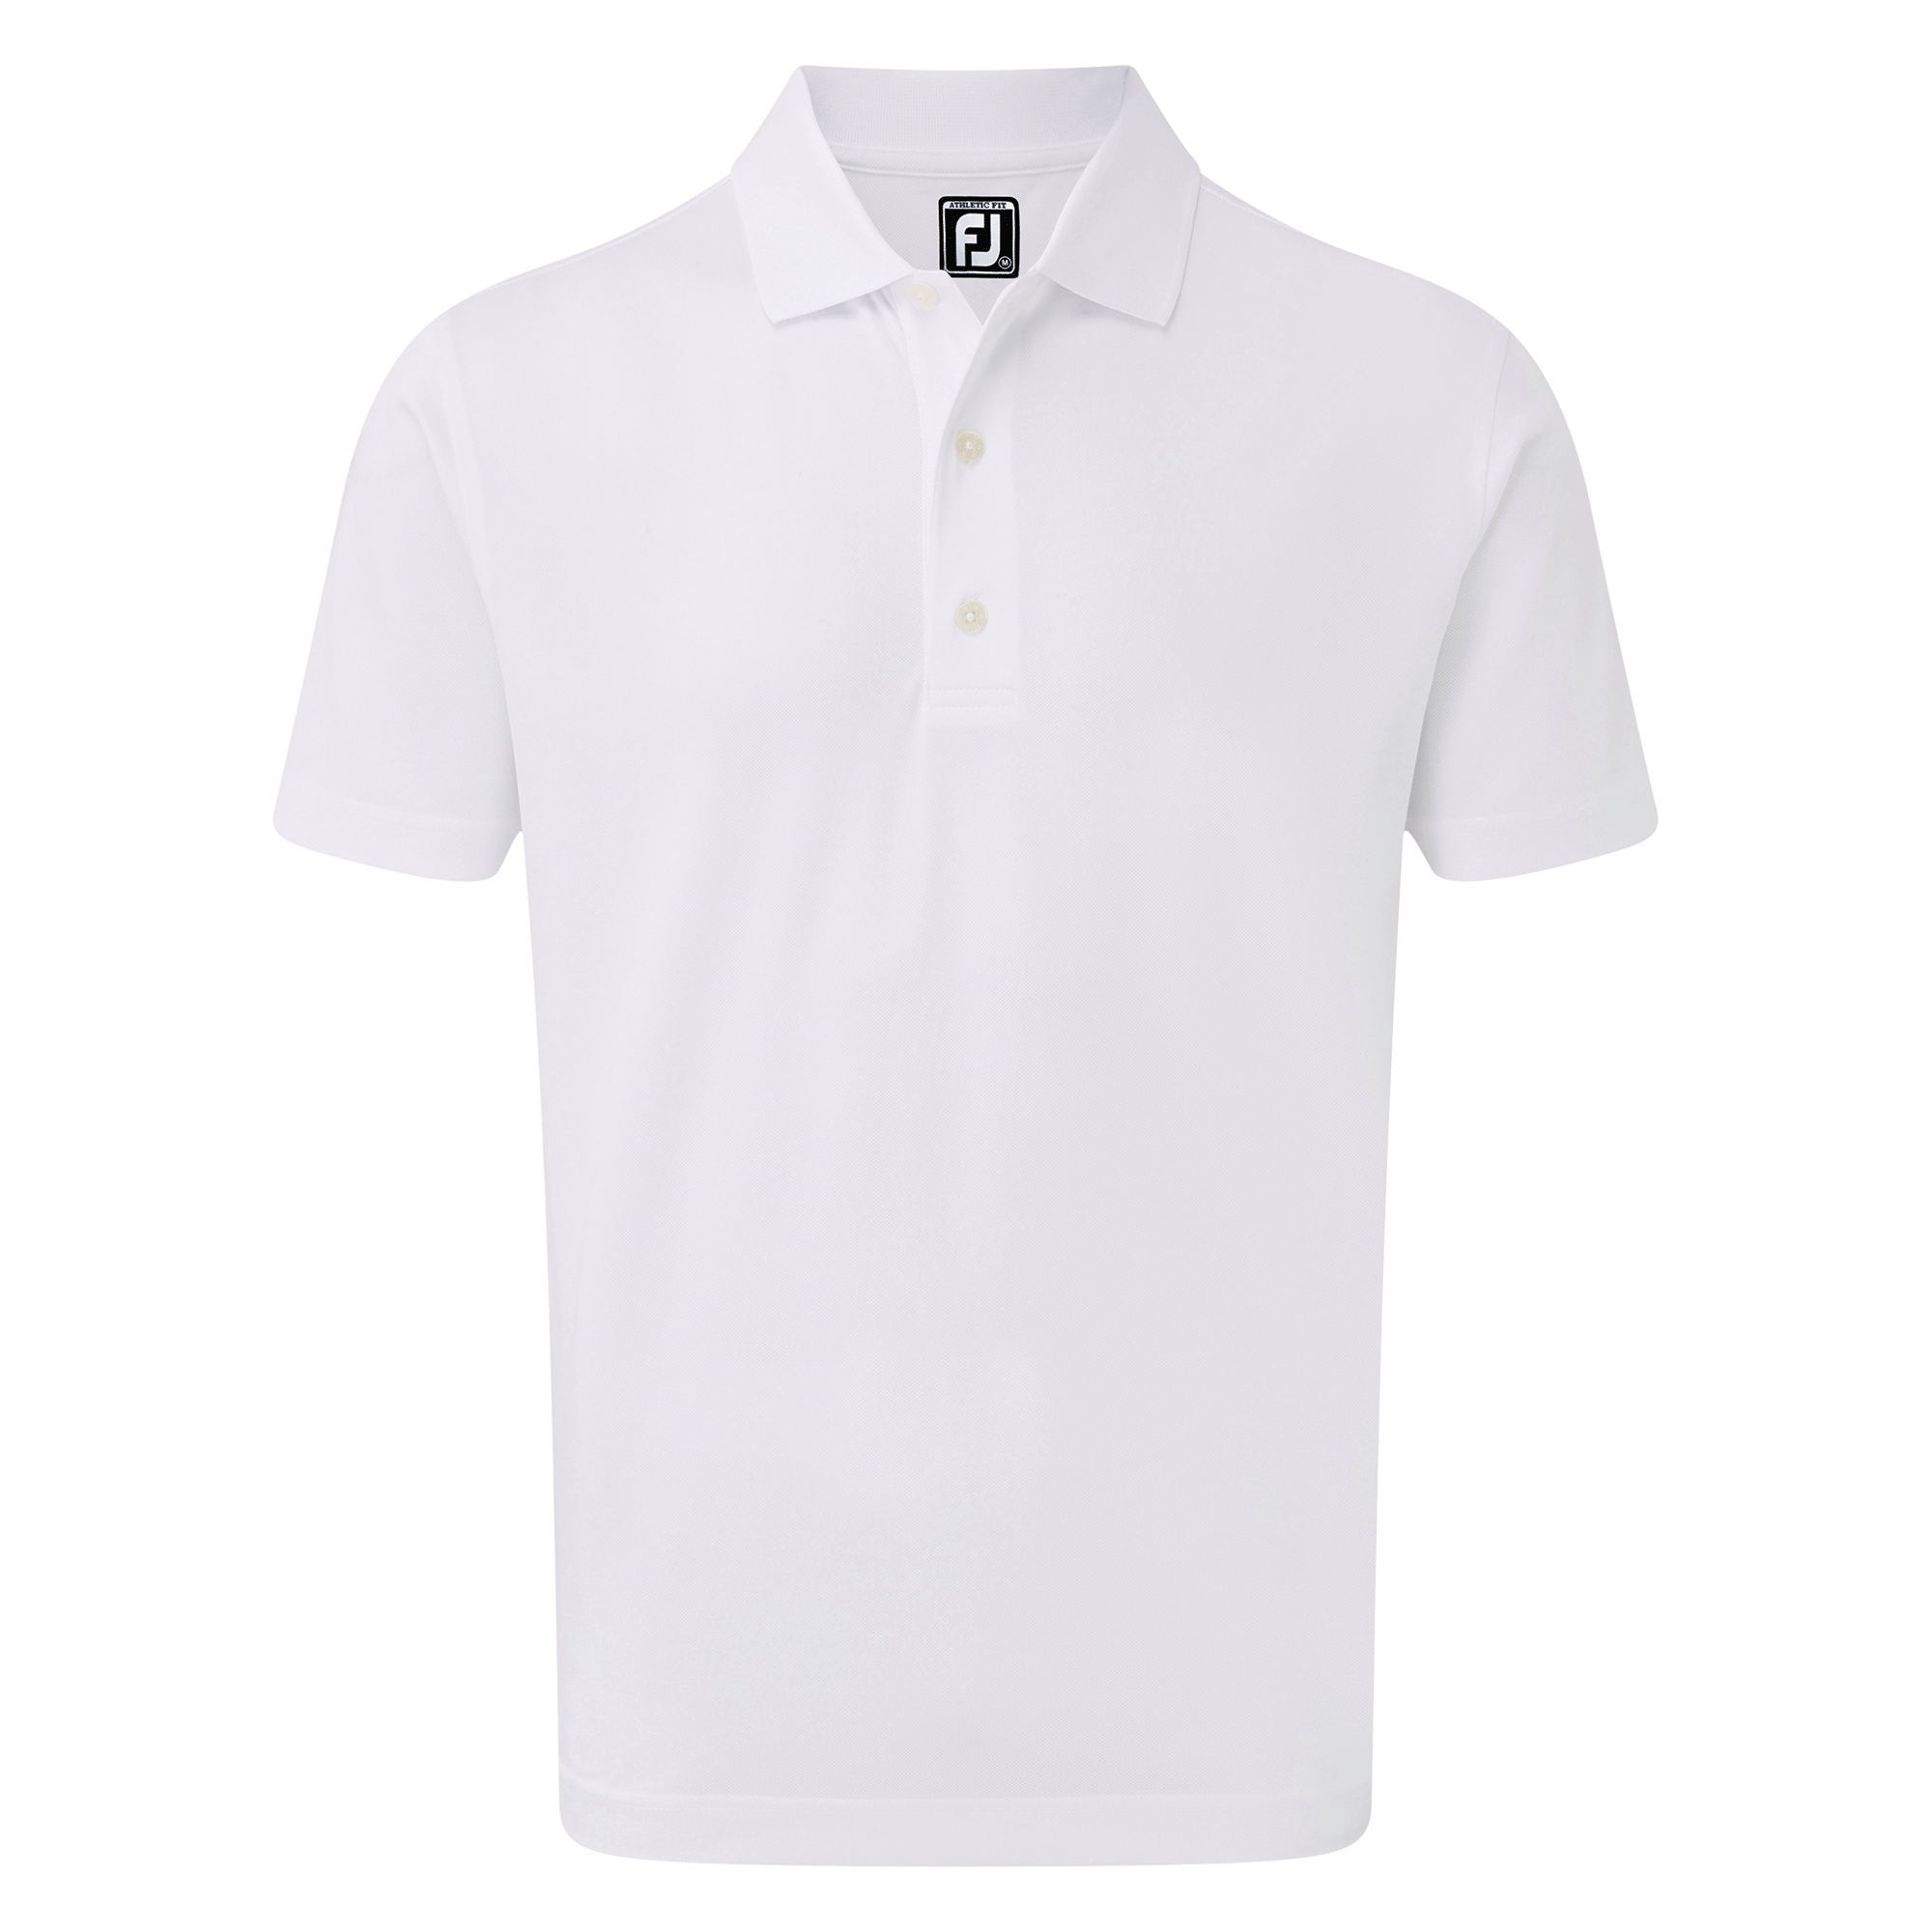 plain white golf t-shirt